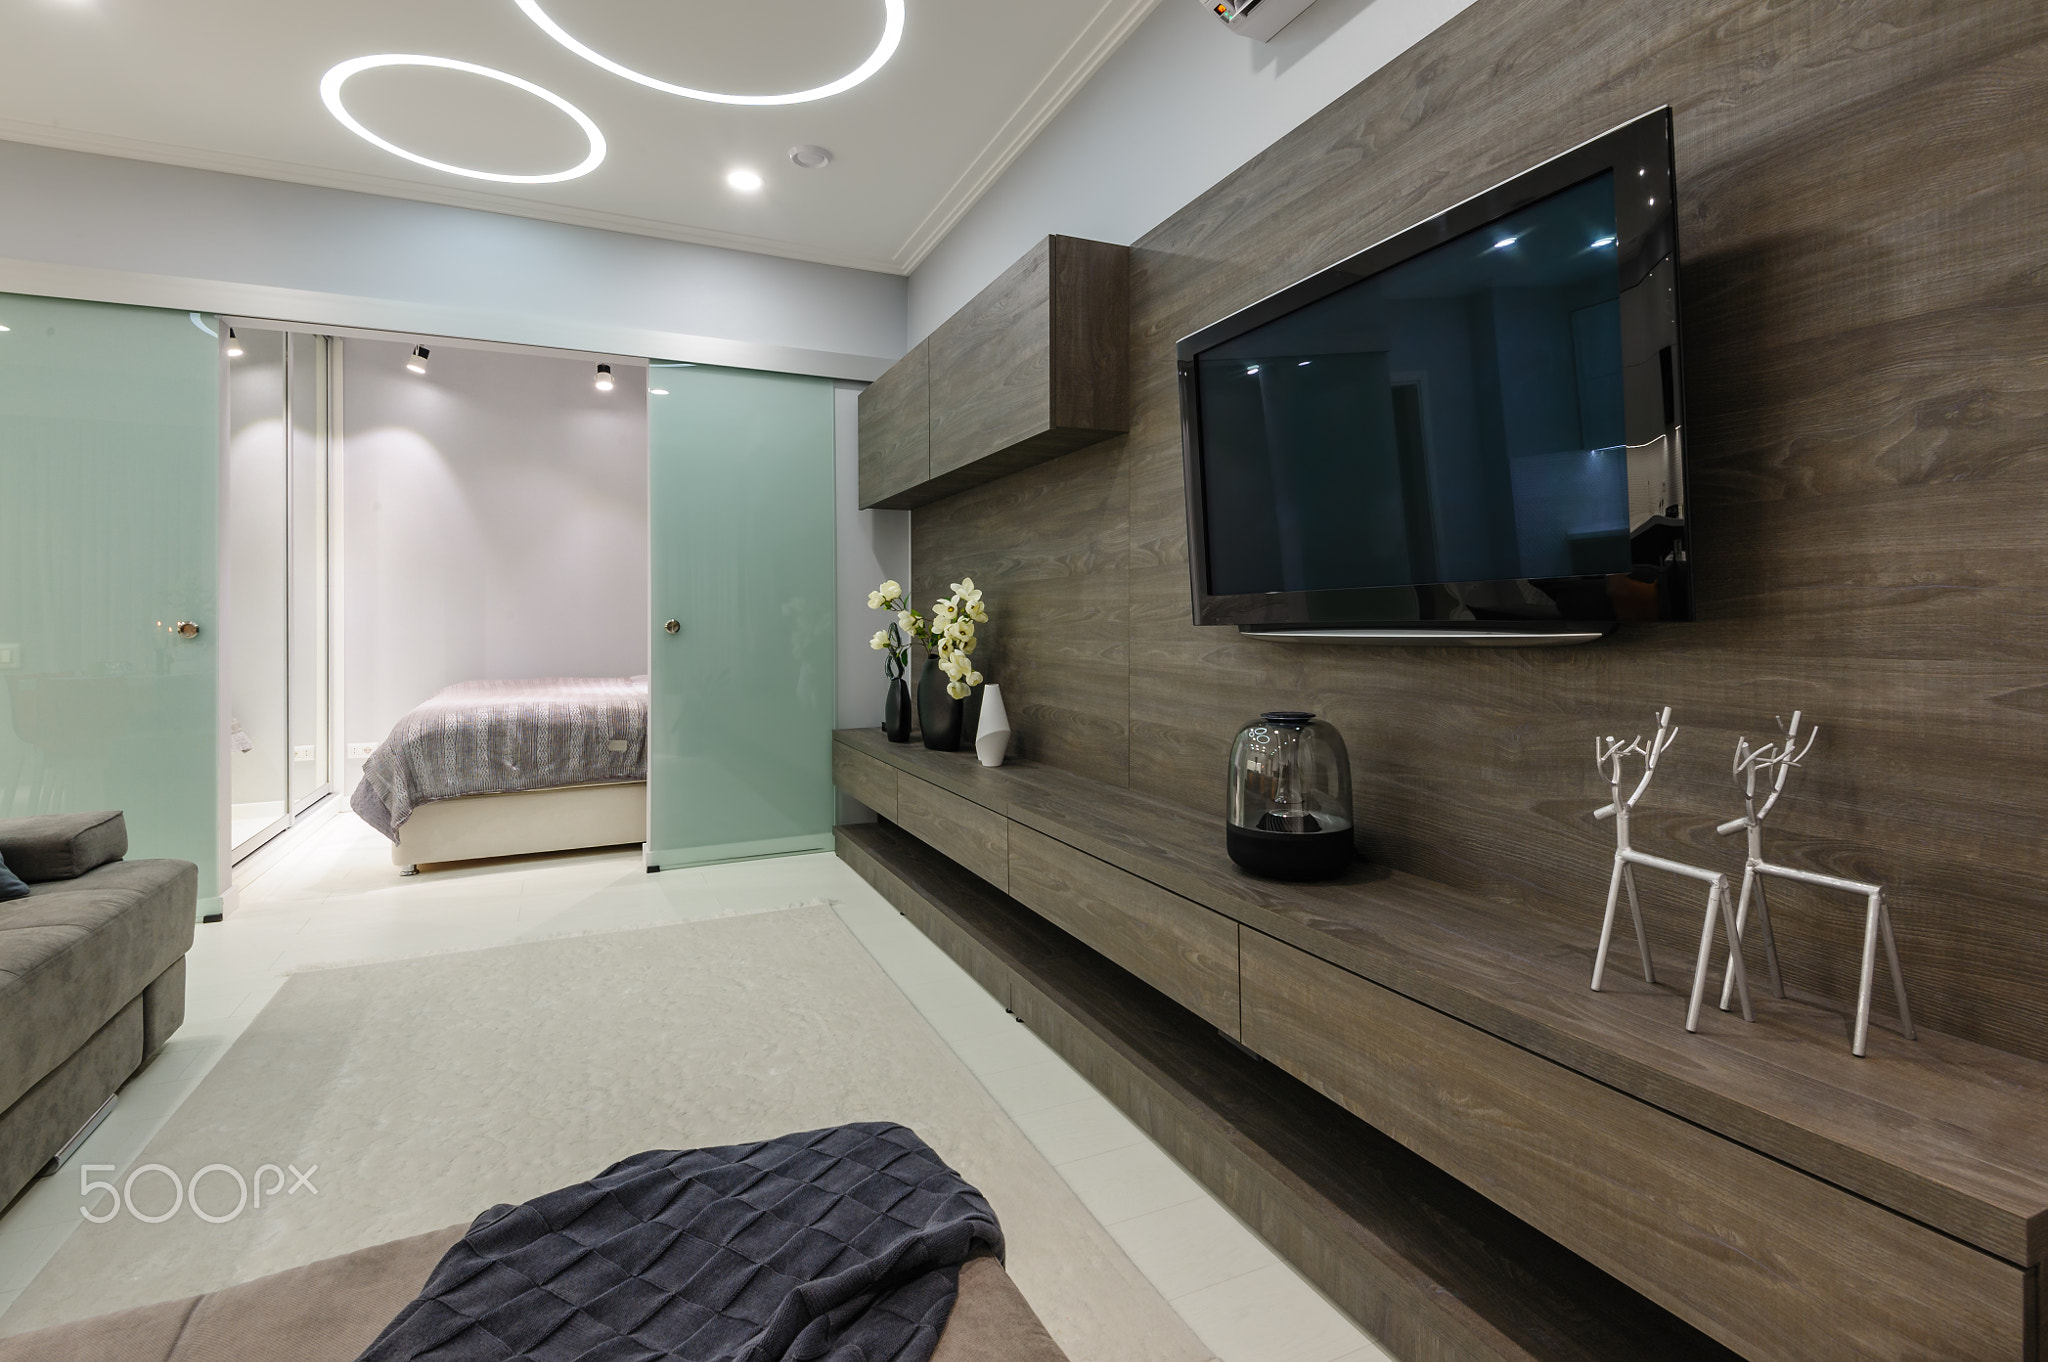 Modern white living studio with bedroom doors open